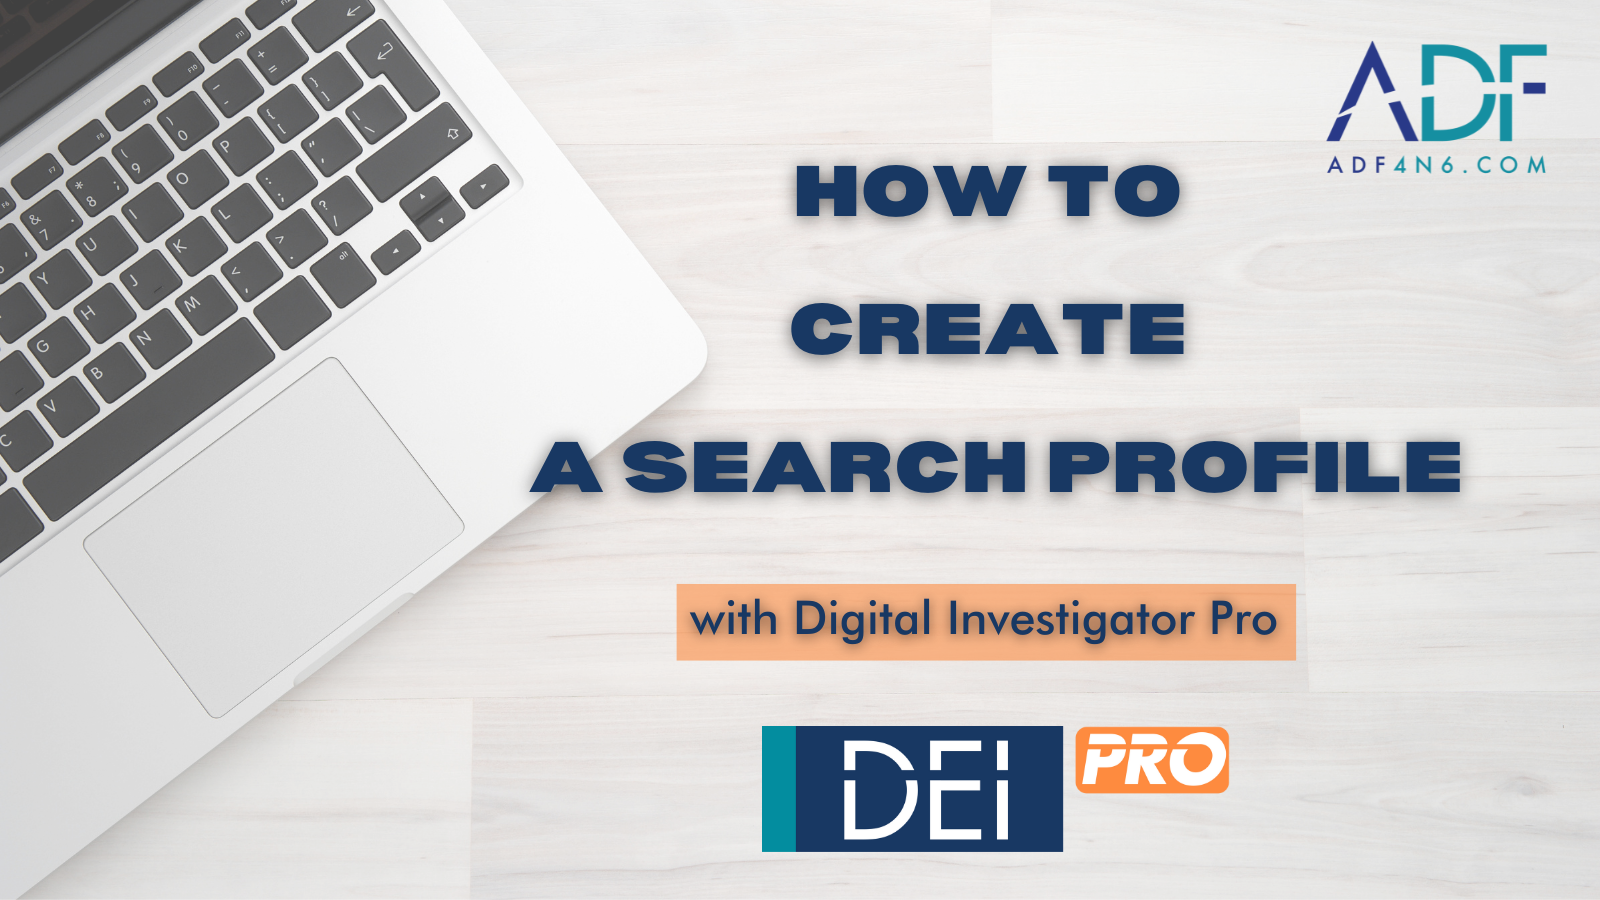 Creating a Search Profile in DEI PRO